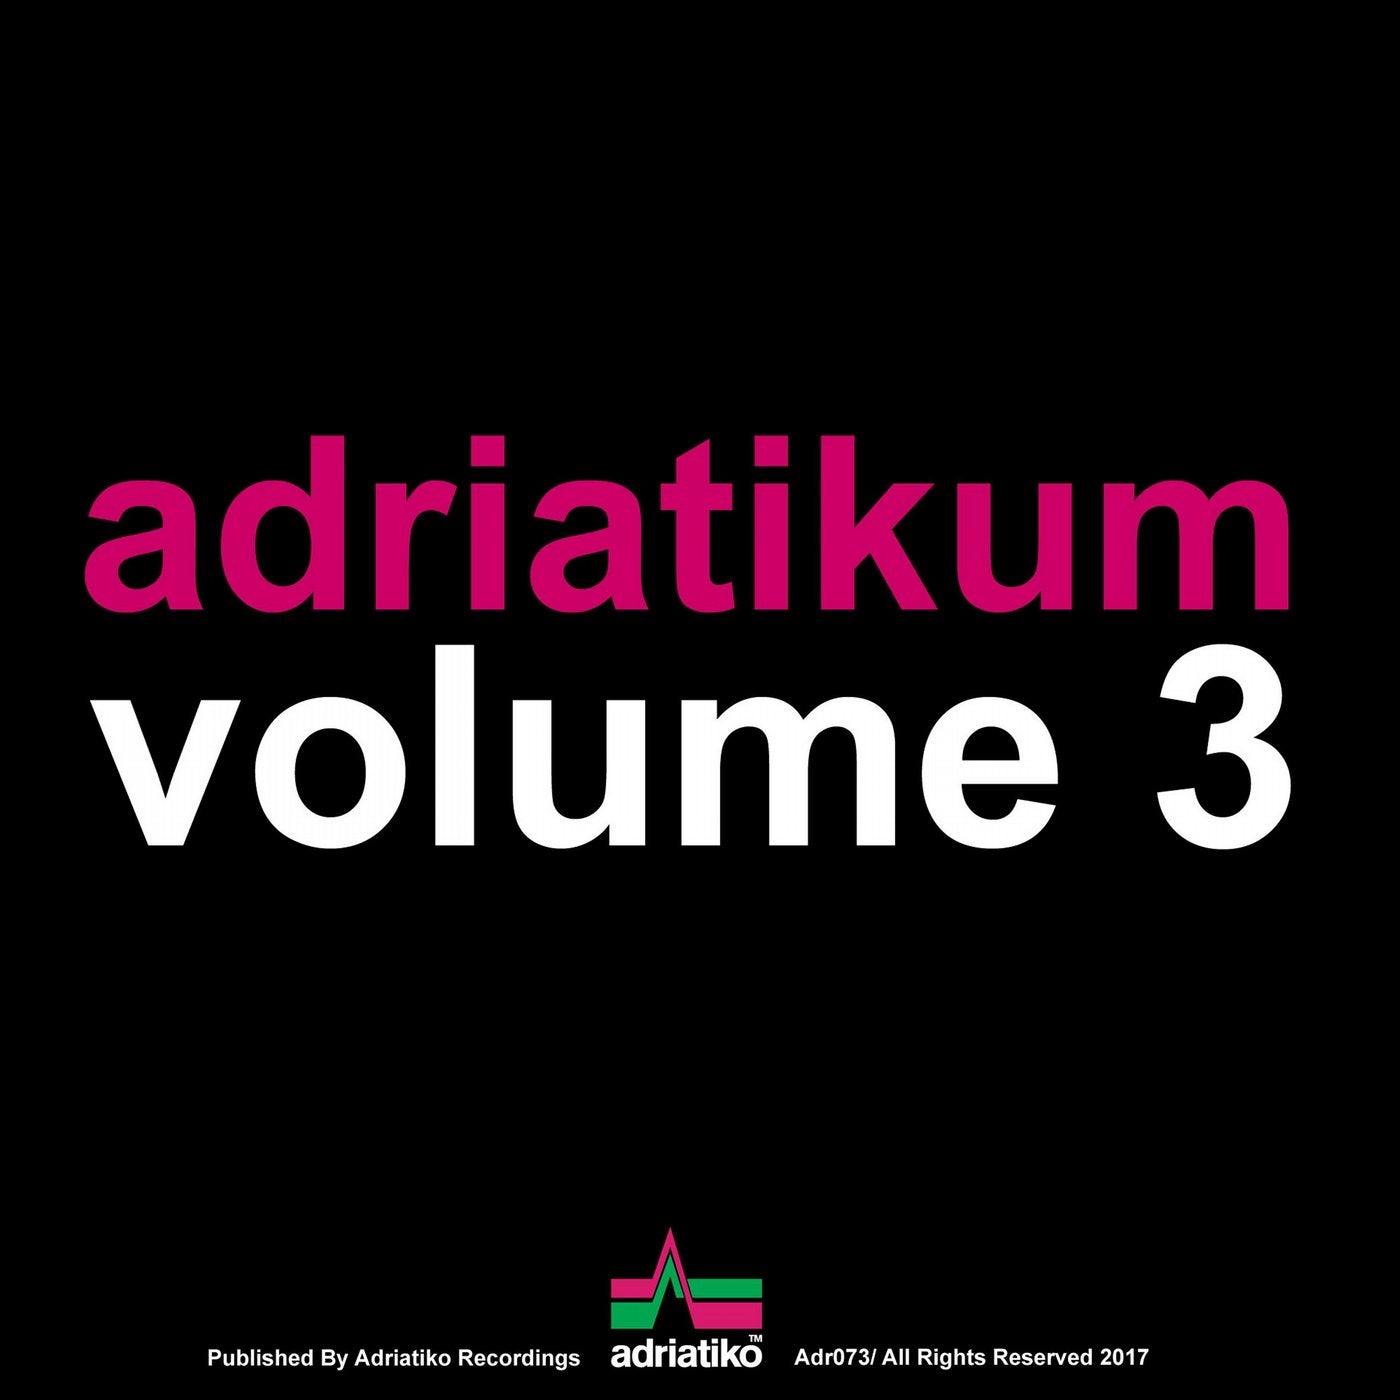 Adriatikum Volume 3